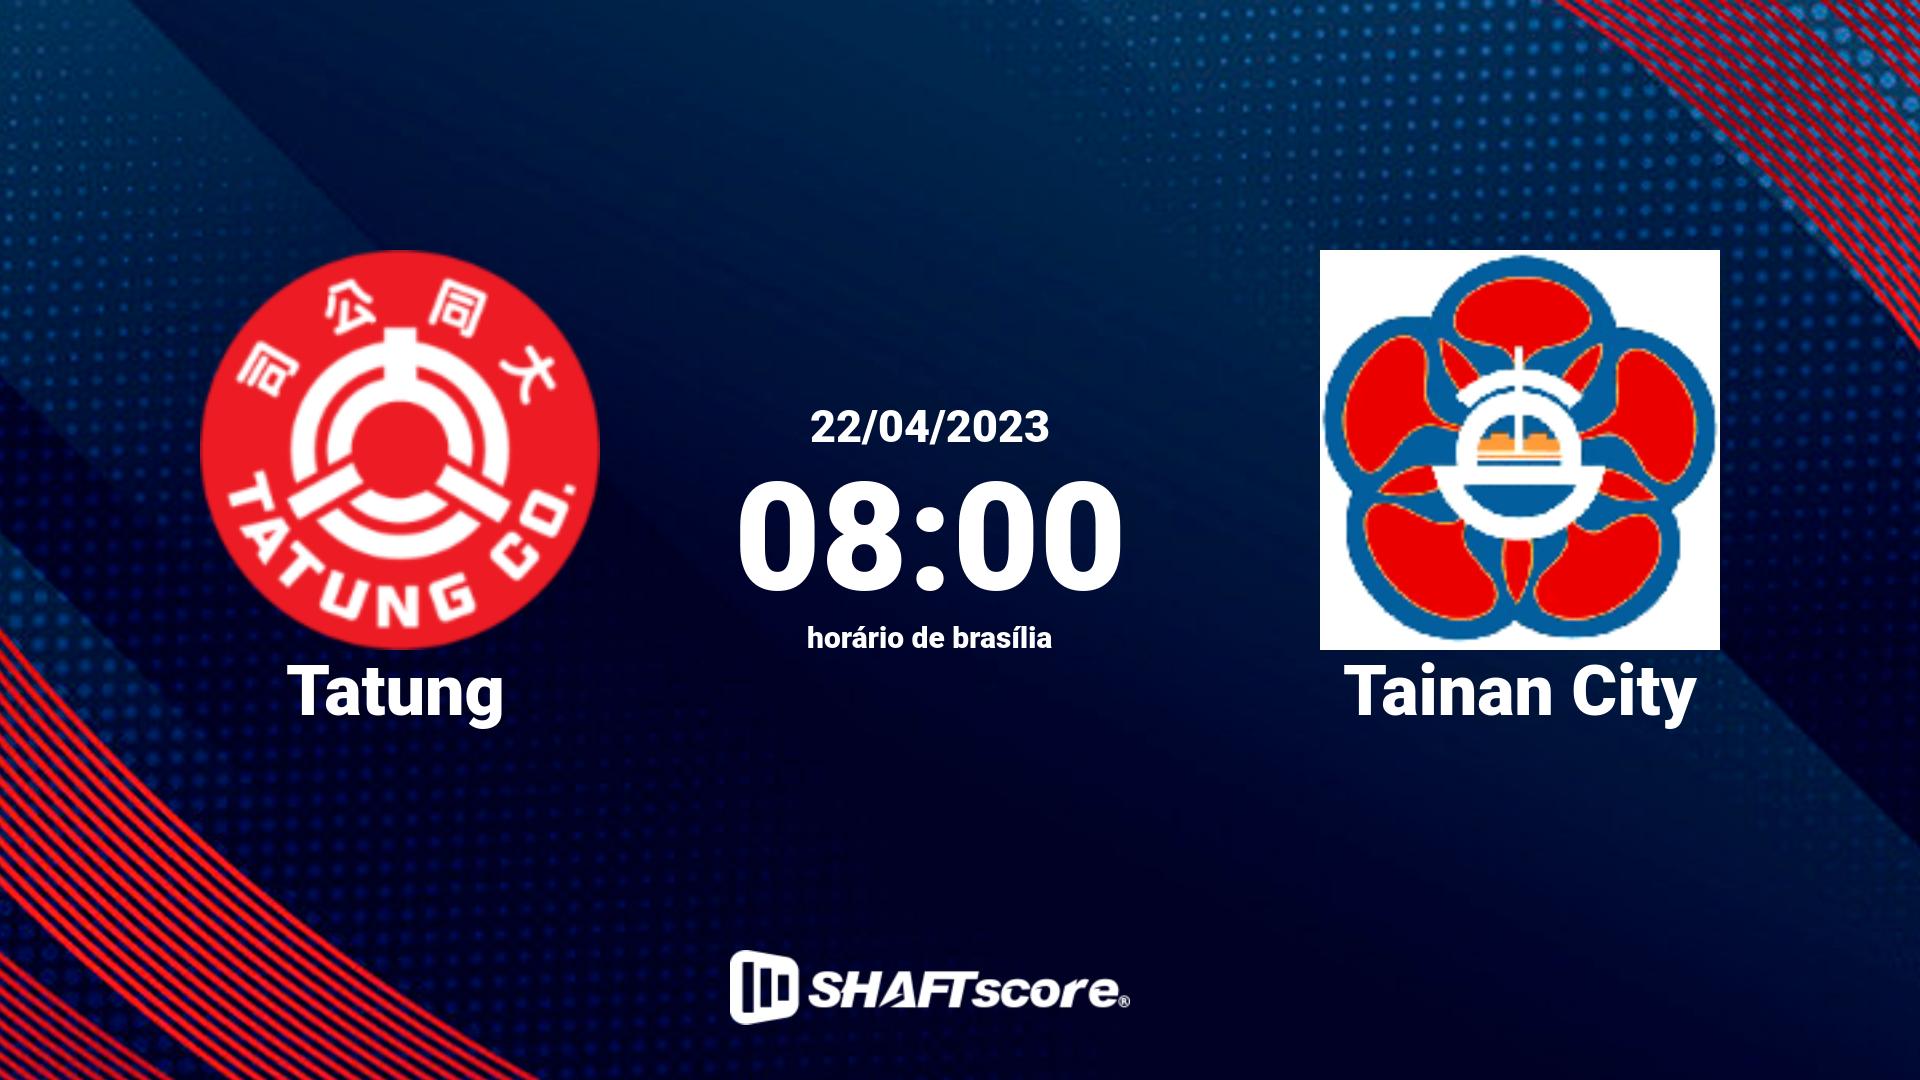 Estatísticas do jogo Tatung vs Tainan City 22.04 08:00